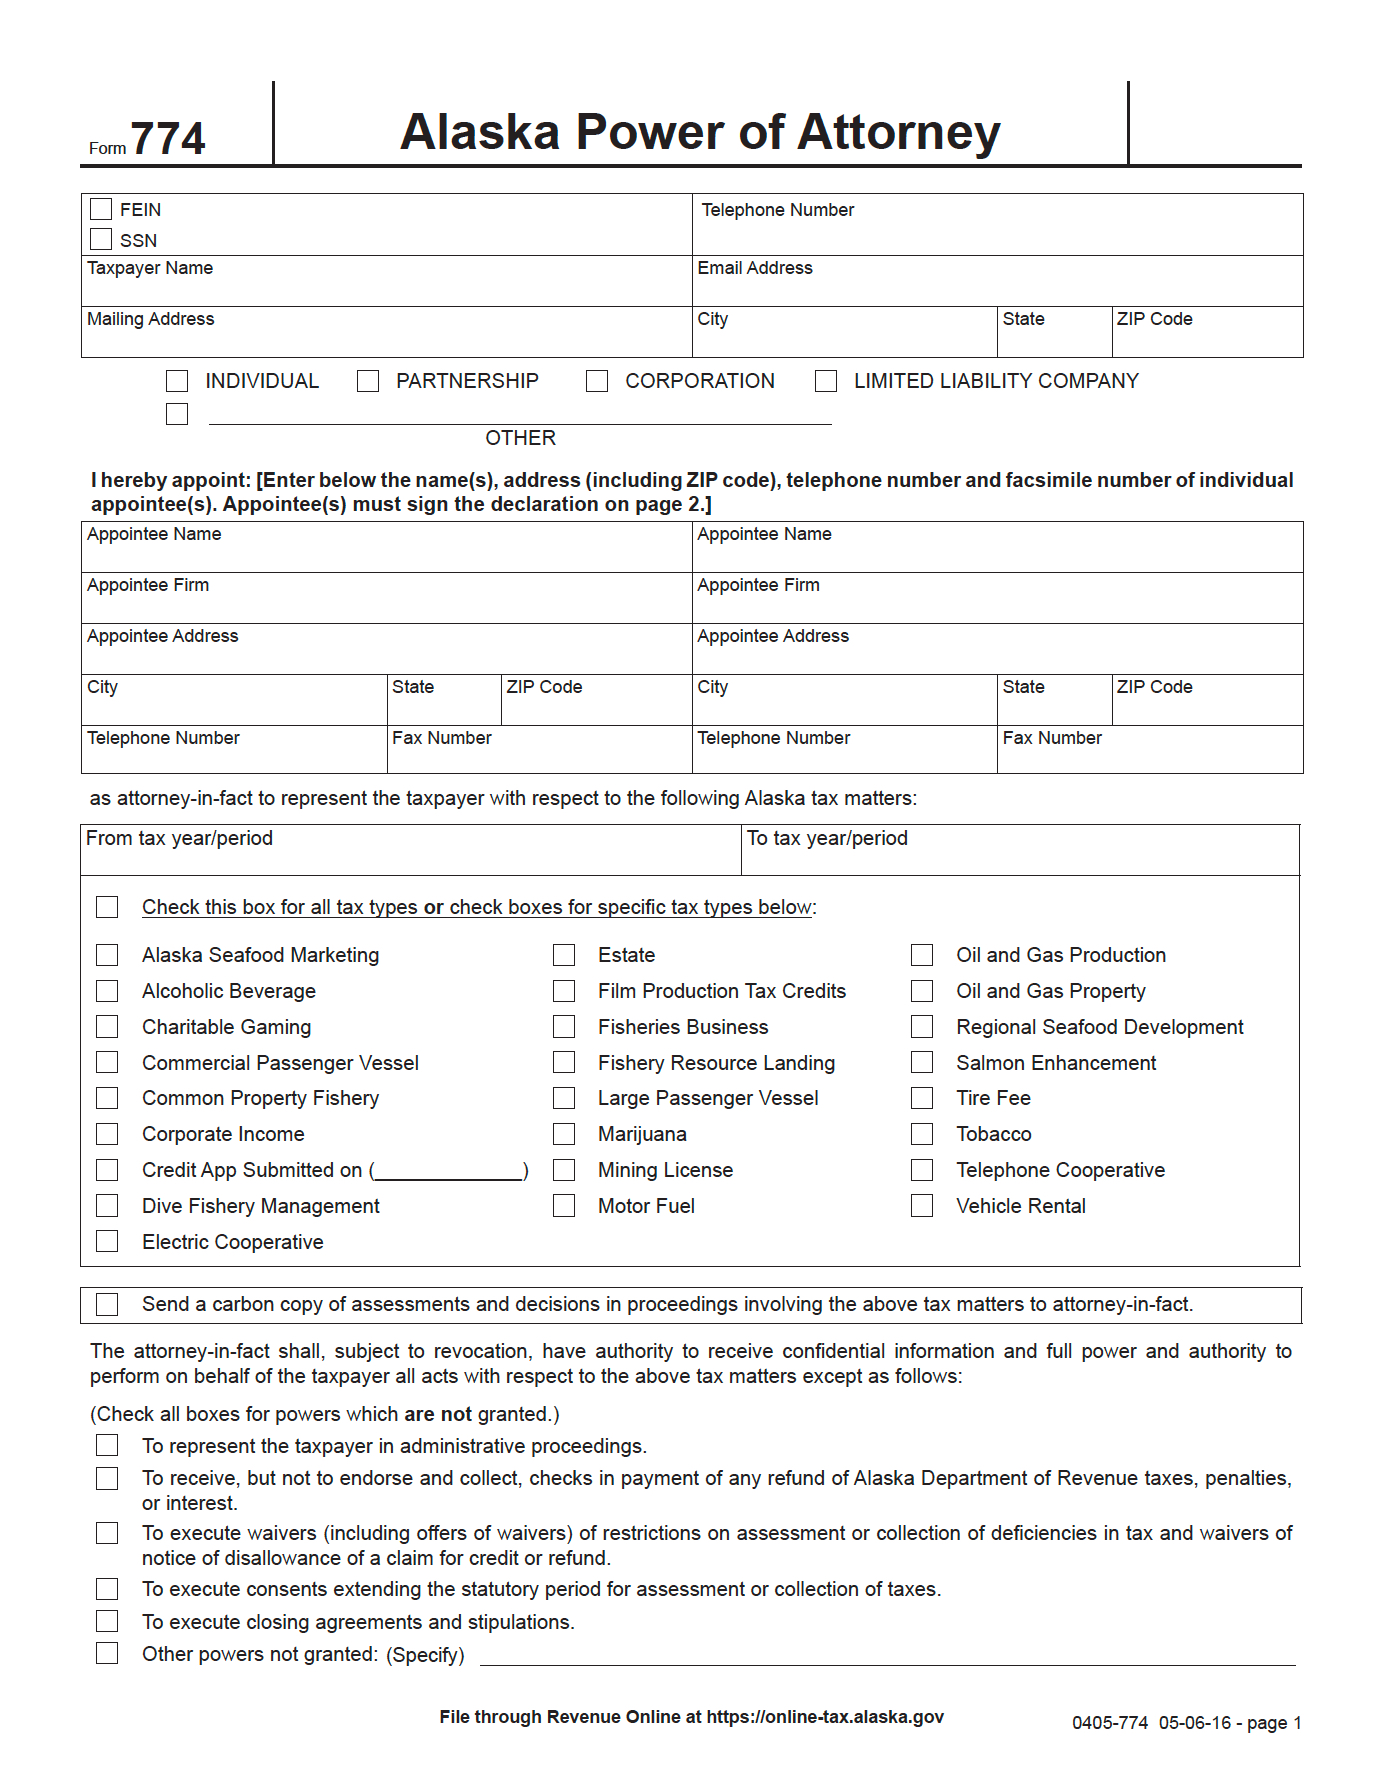 free-alaska-tax-power-of-attorney-form-774-pdf